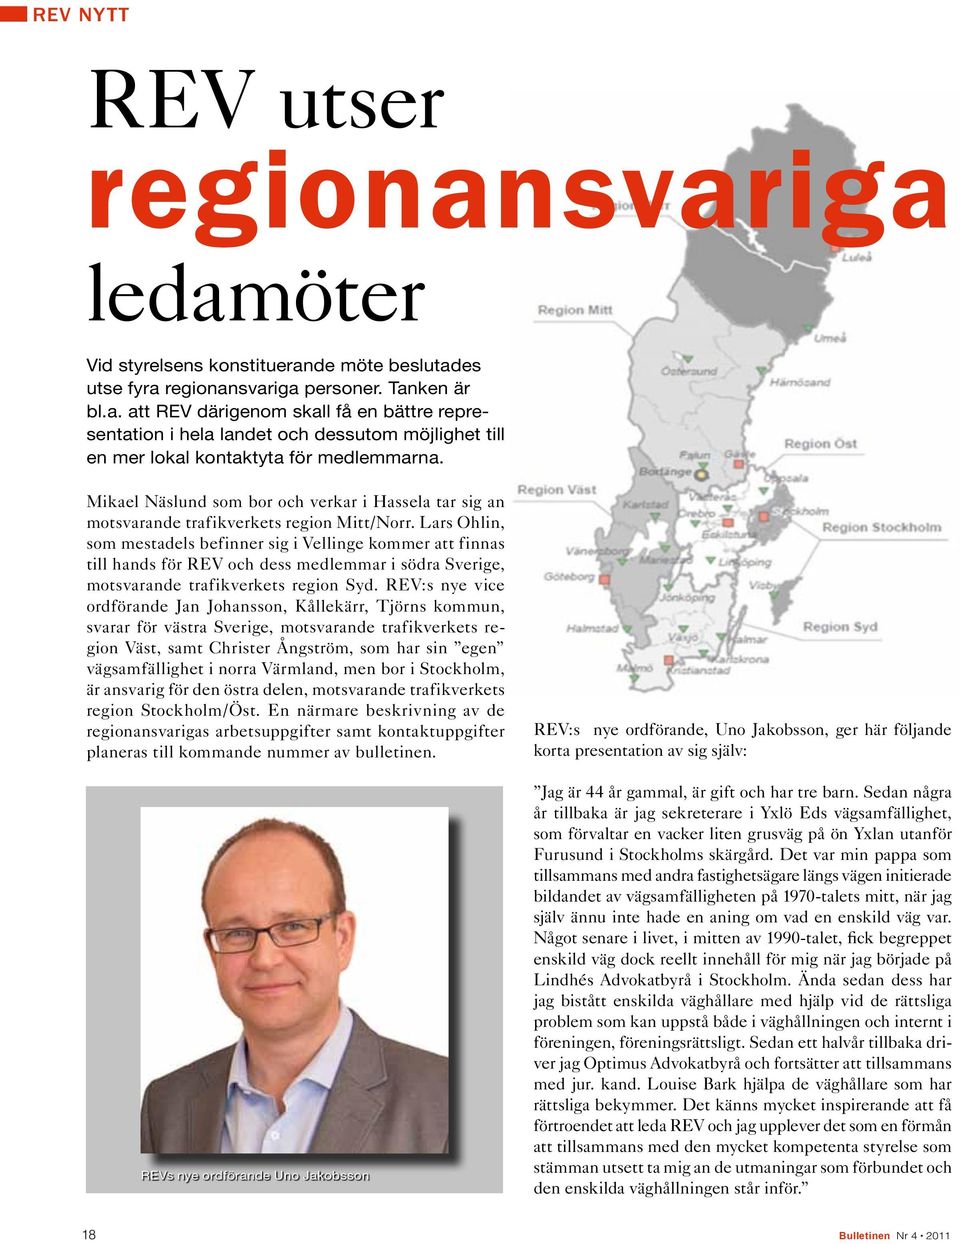 Lars Ohlin, som mestadels befinner sig i Vellinge kommer att finnas till hands för REV och dess medlemmar i södra Sverige, motsvarande trafikverkets region Syd.